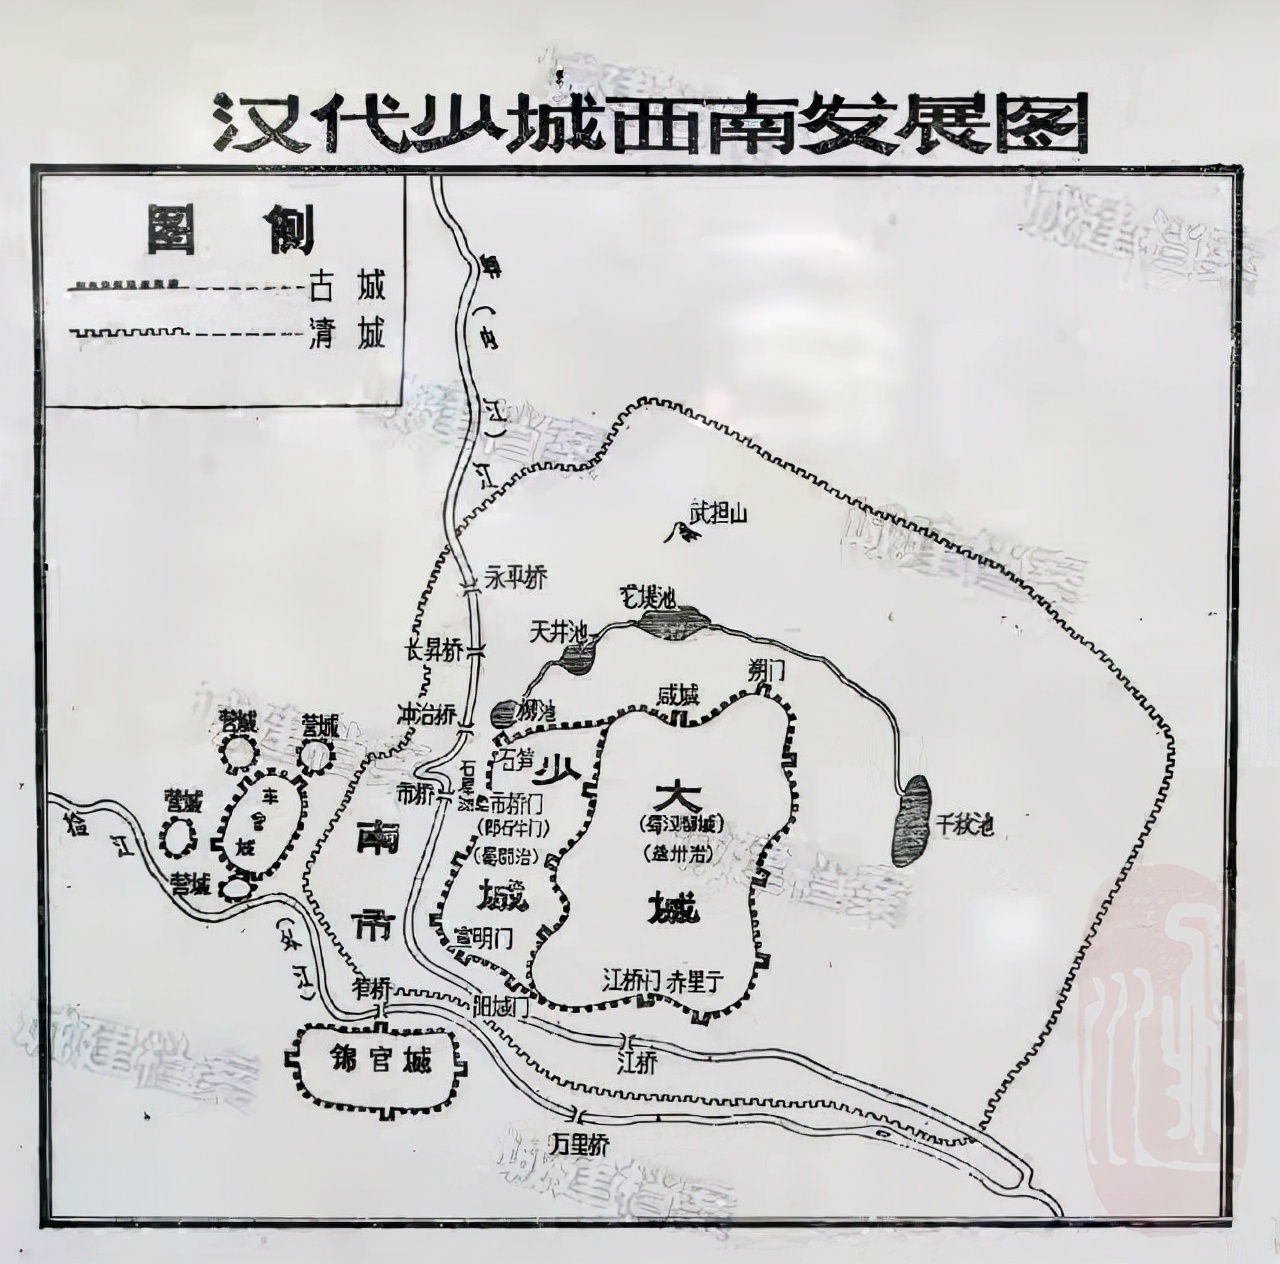 成都为什么被称为“锦城”或者“锦官城”？